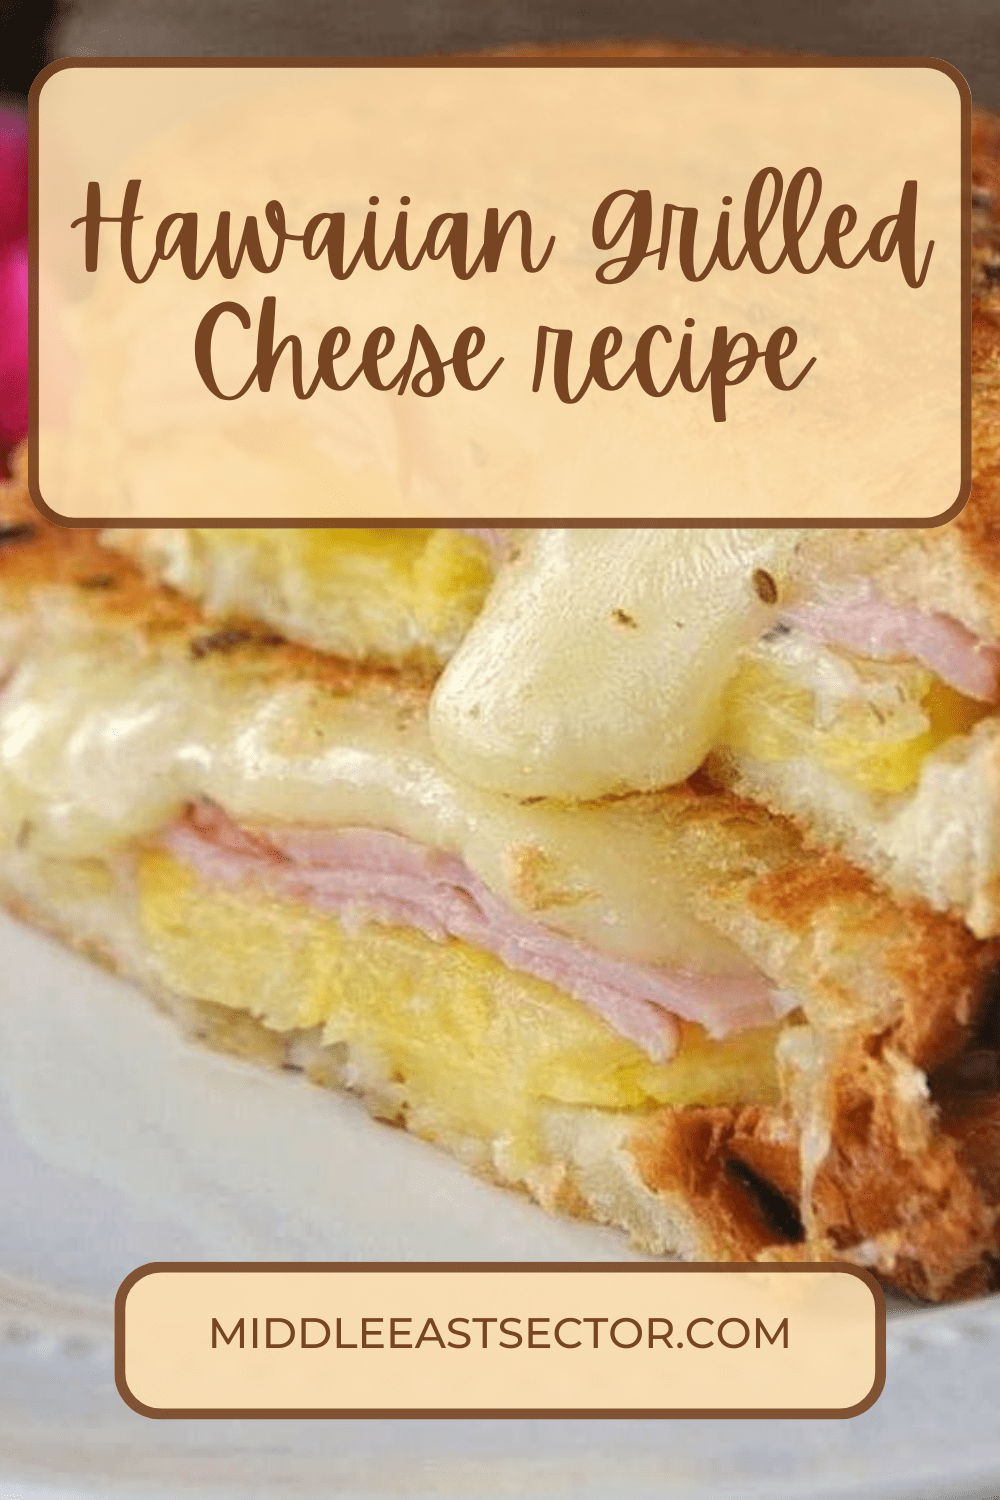 Hawaiian Grilled Cheese recipe - middleeastsector